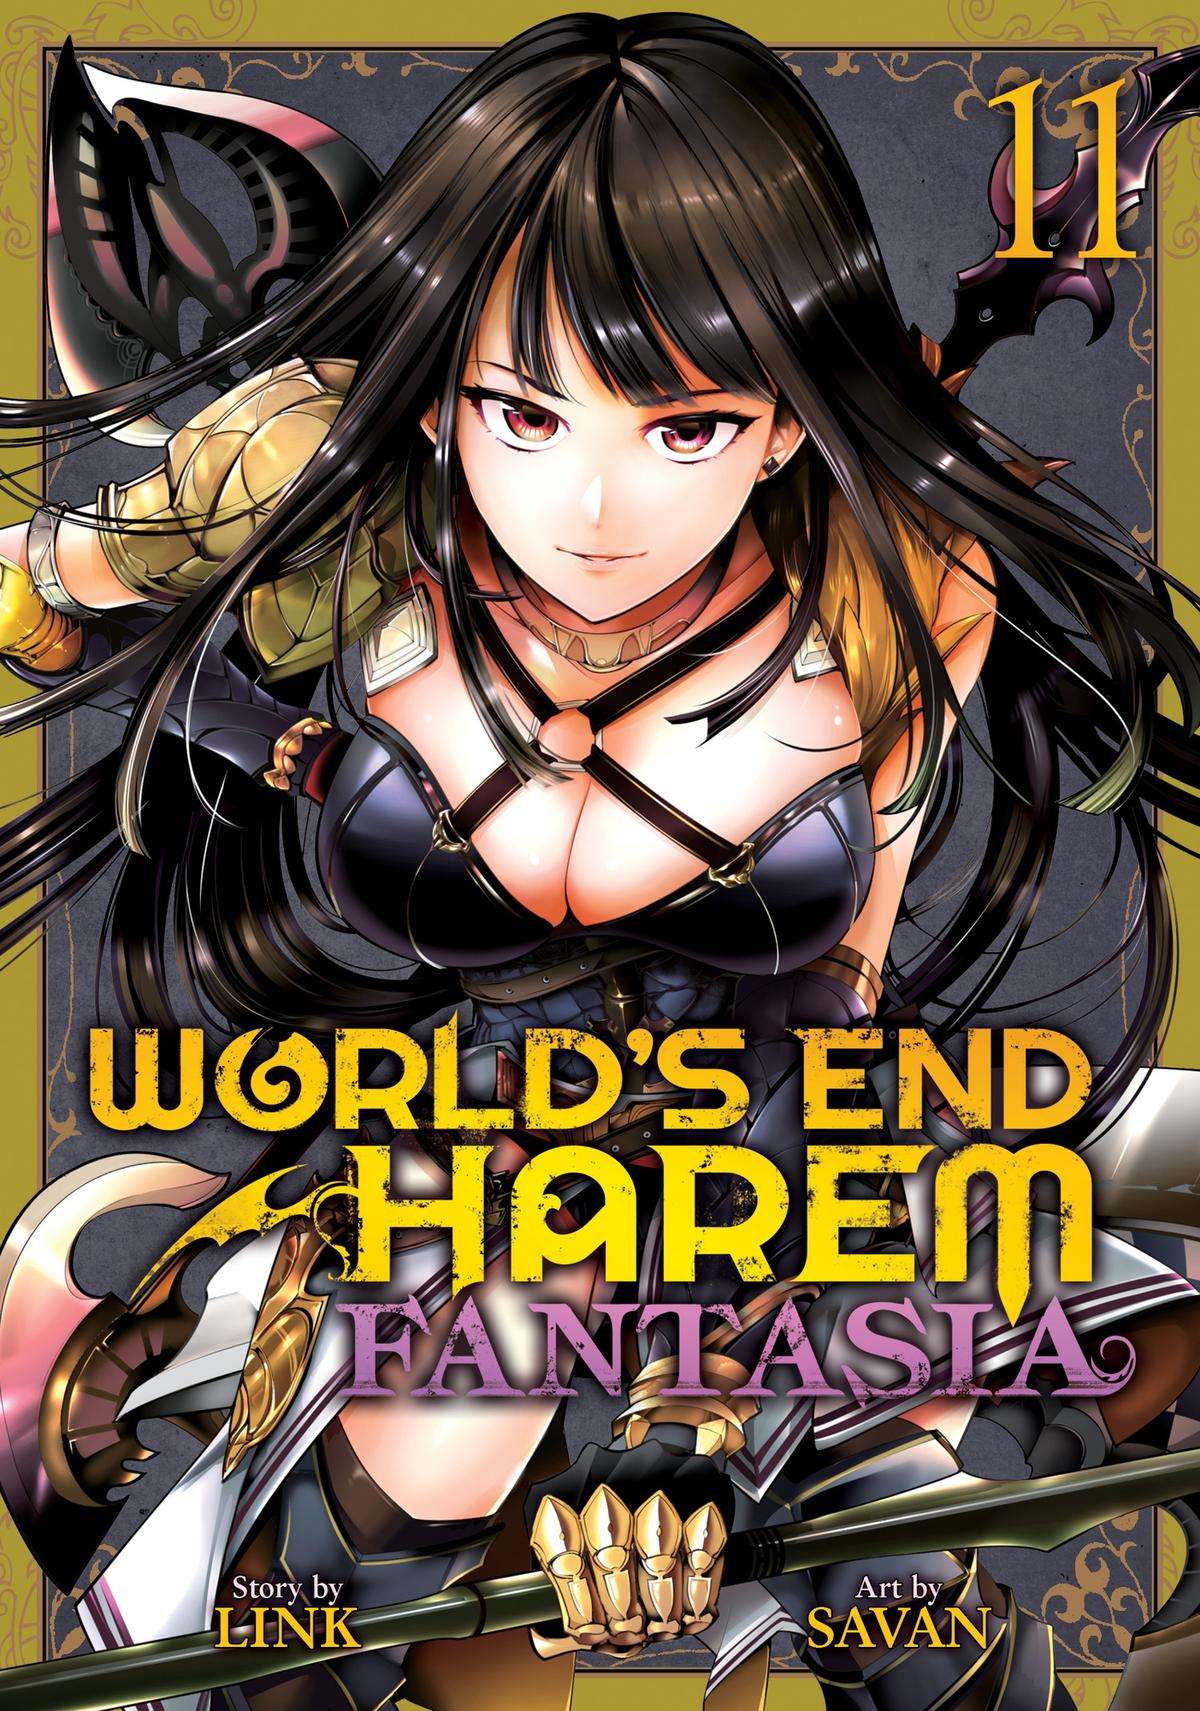 World's End Harem - Fantasia - chapter 43 - #1